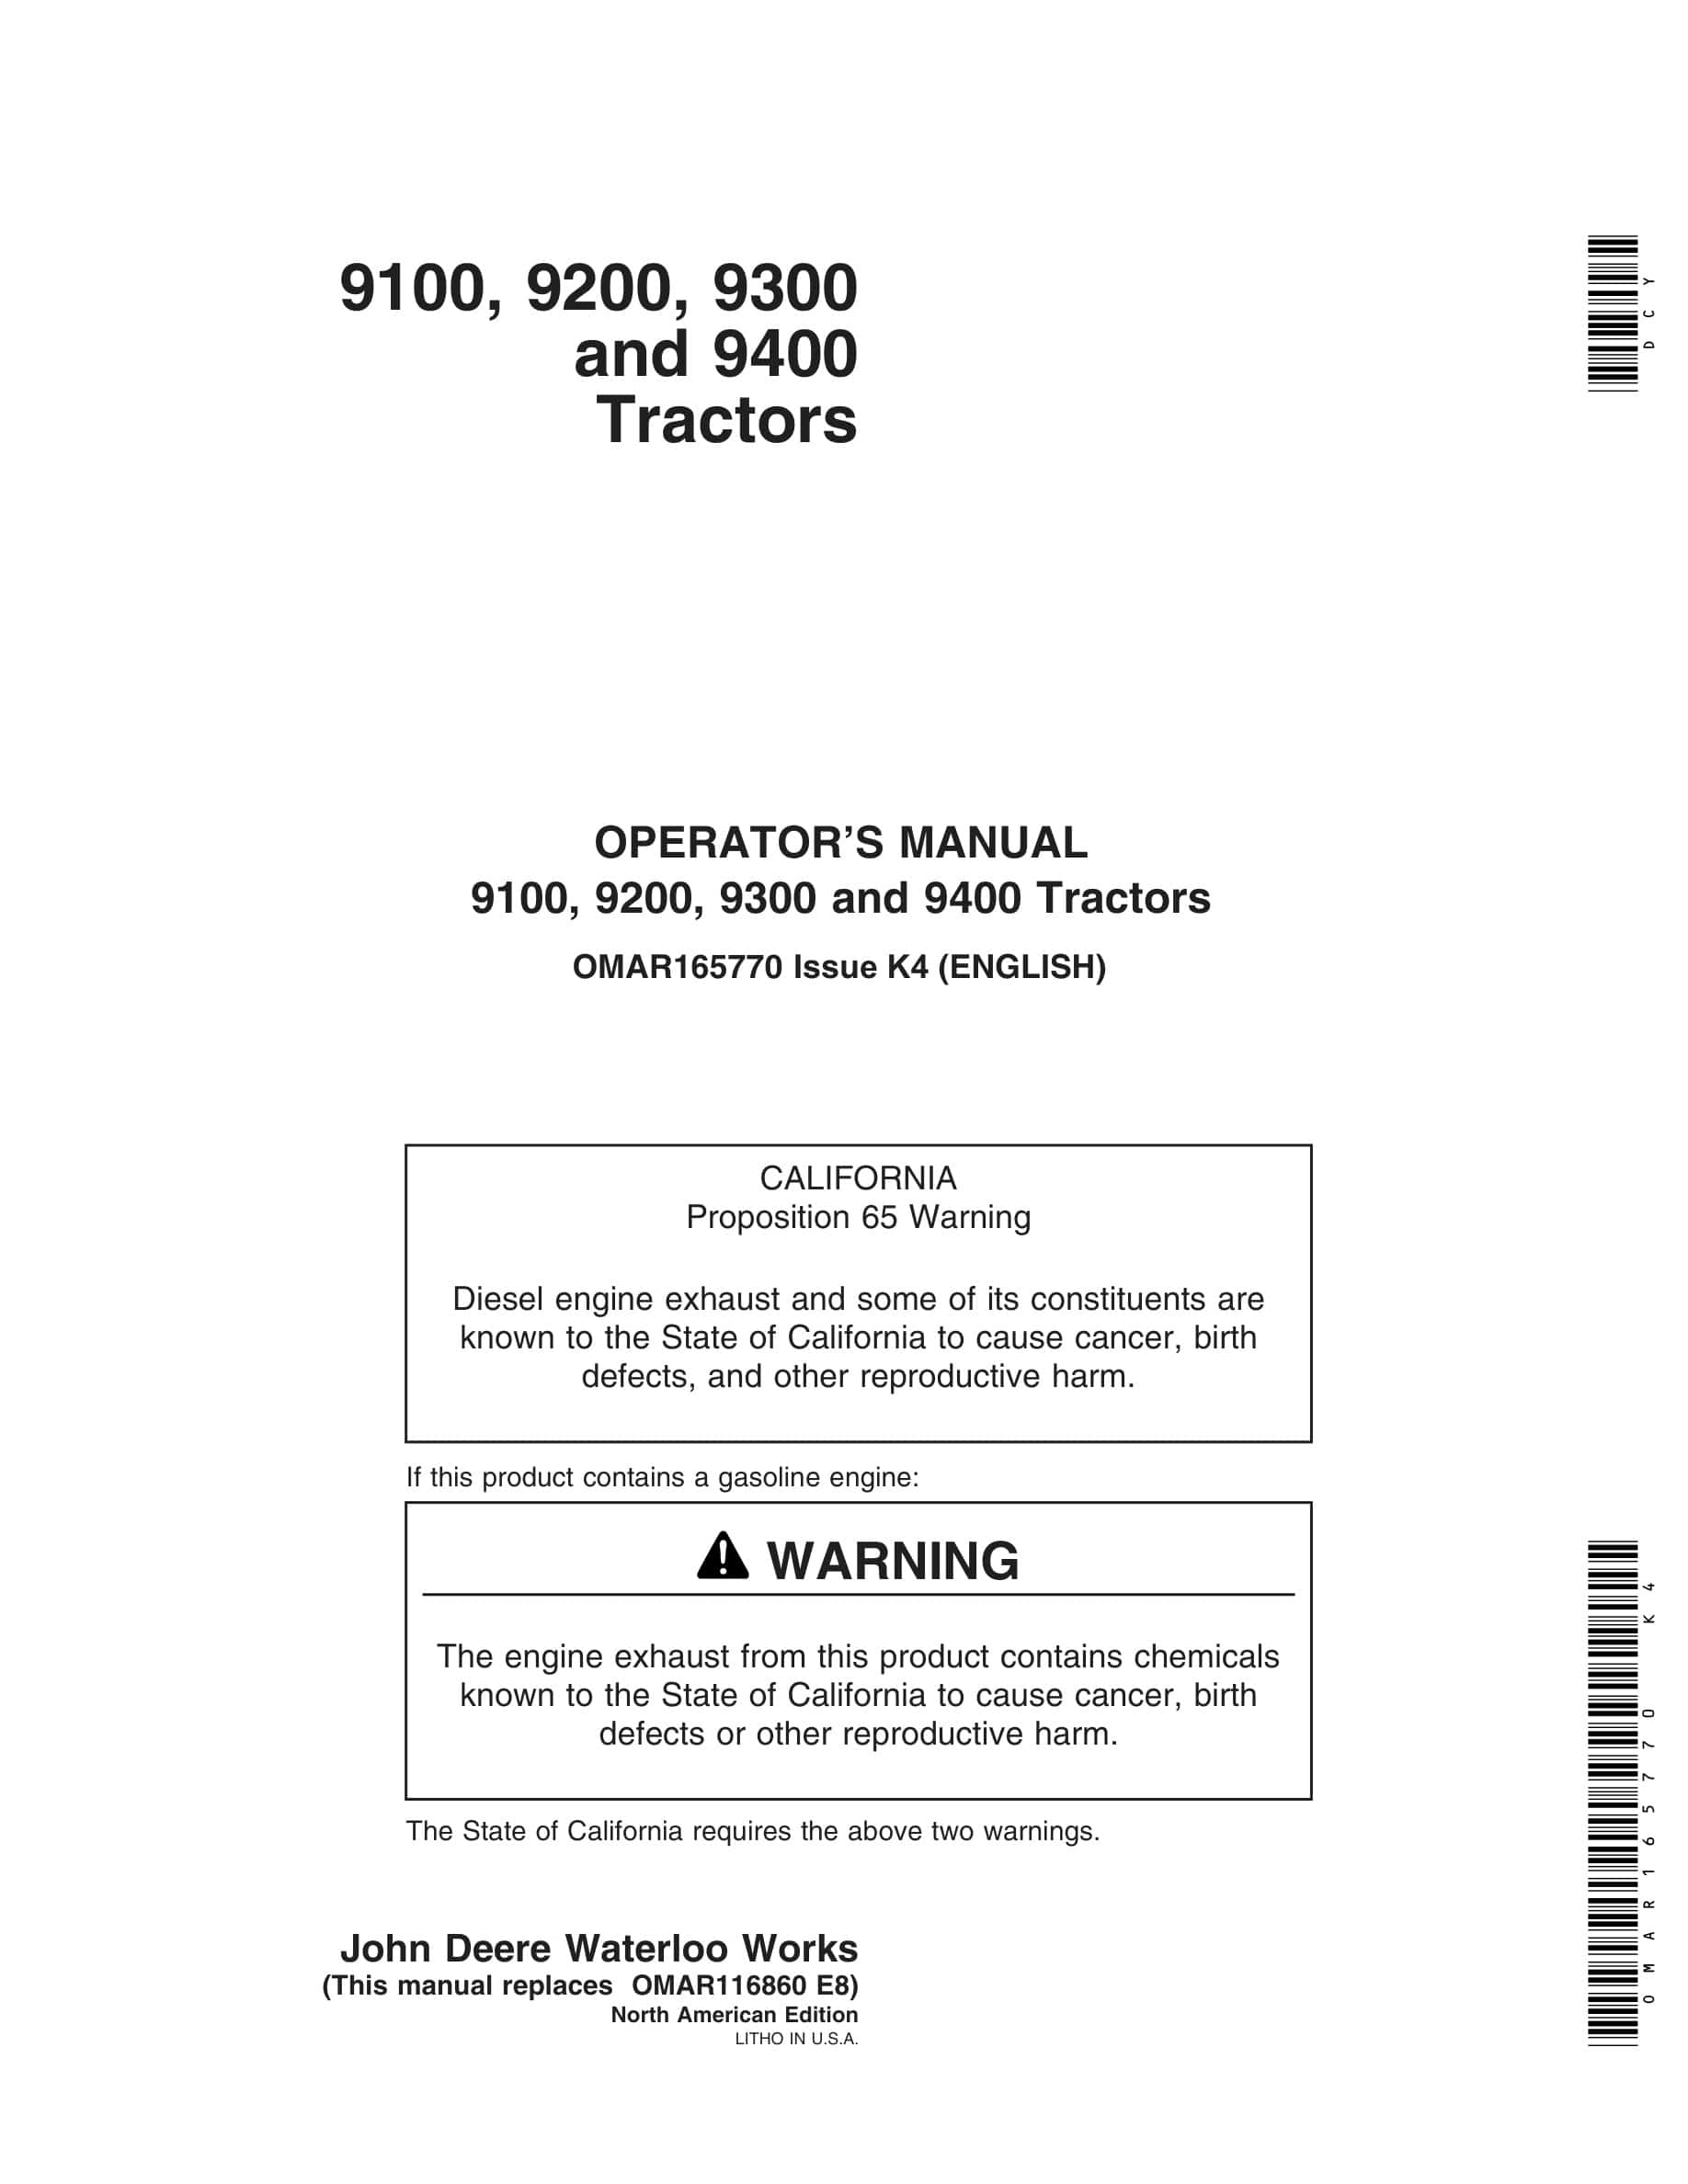 John Deere 9100, 9200, 9300 and 9400 Tractor Operator Manual OMAR165770-1